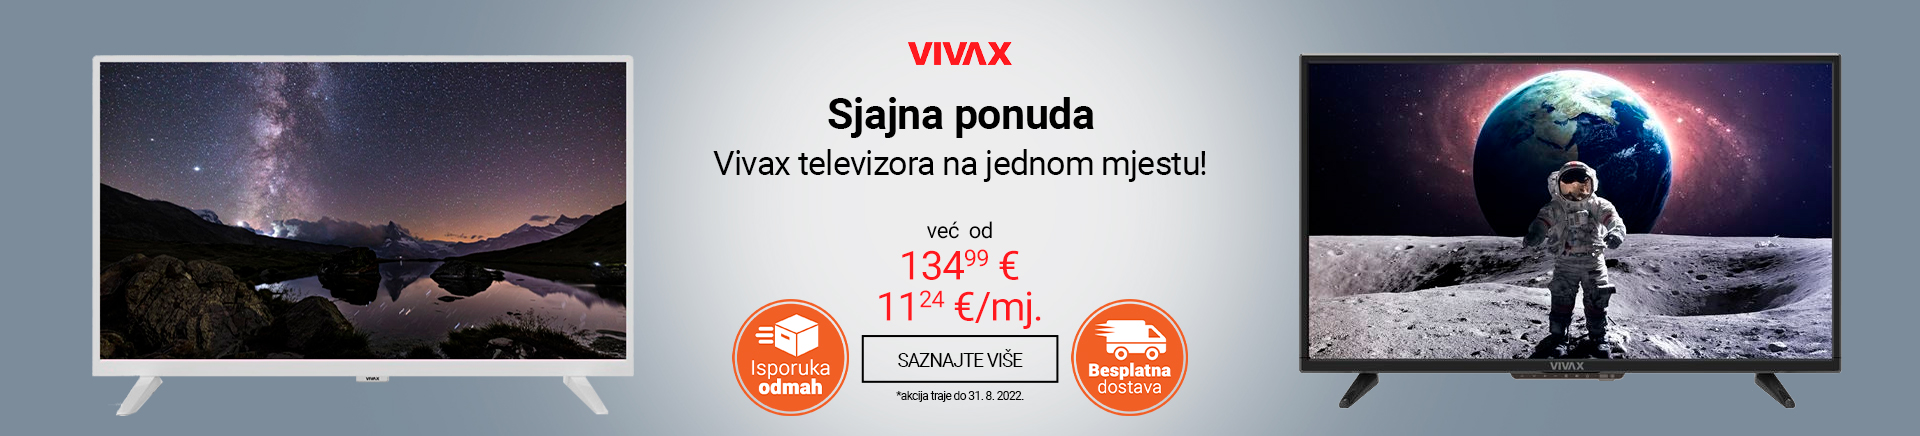 CG Vivax TV WIDESCREEN 1920 X 436.jpg